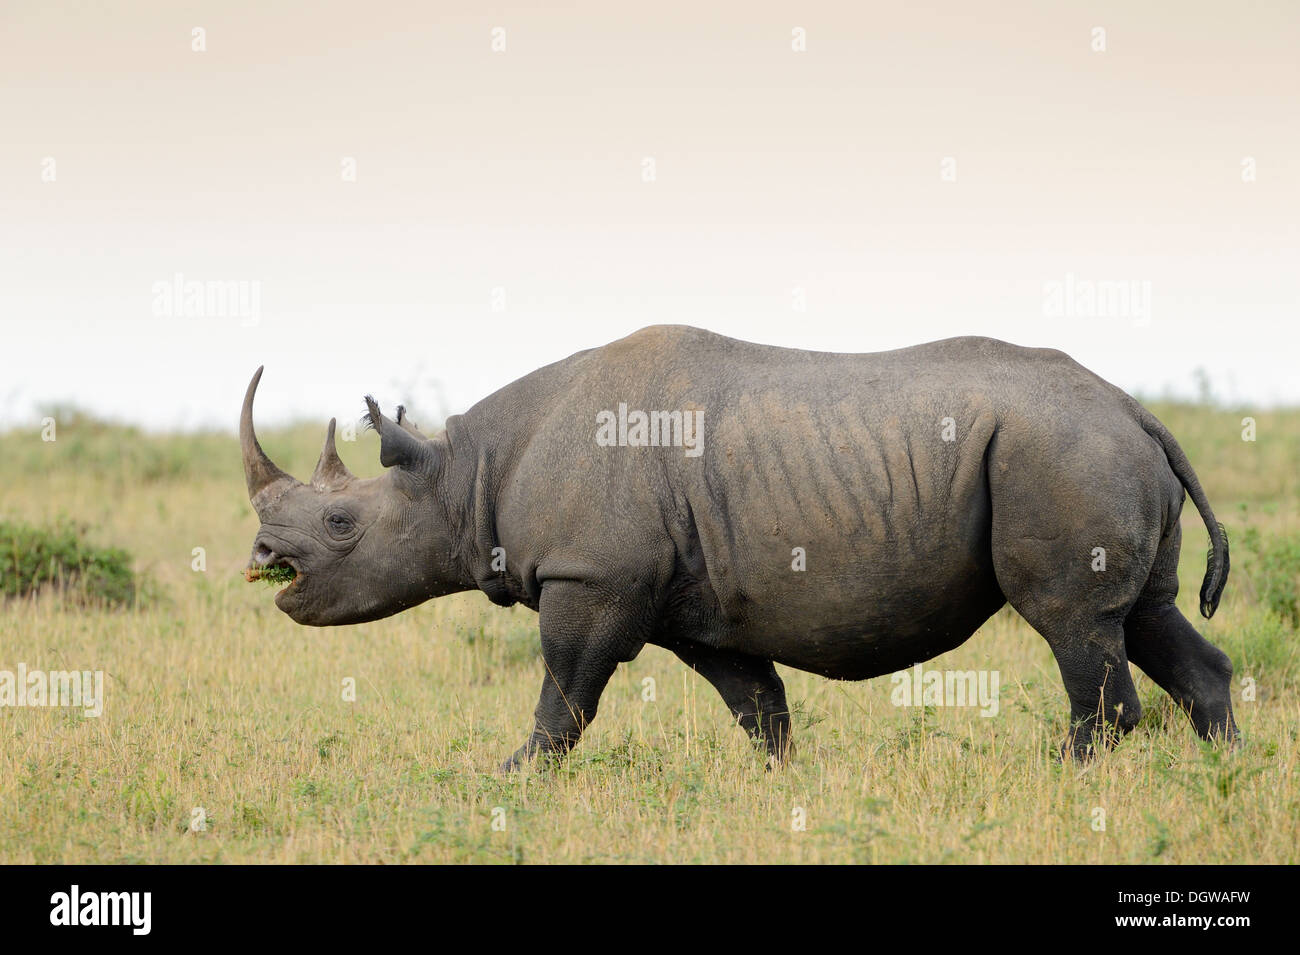 El rinoceronte negro, caminando sobre el césped. Foto de stock